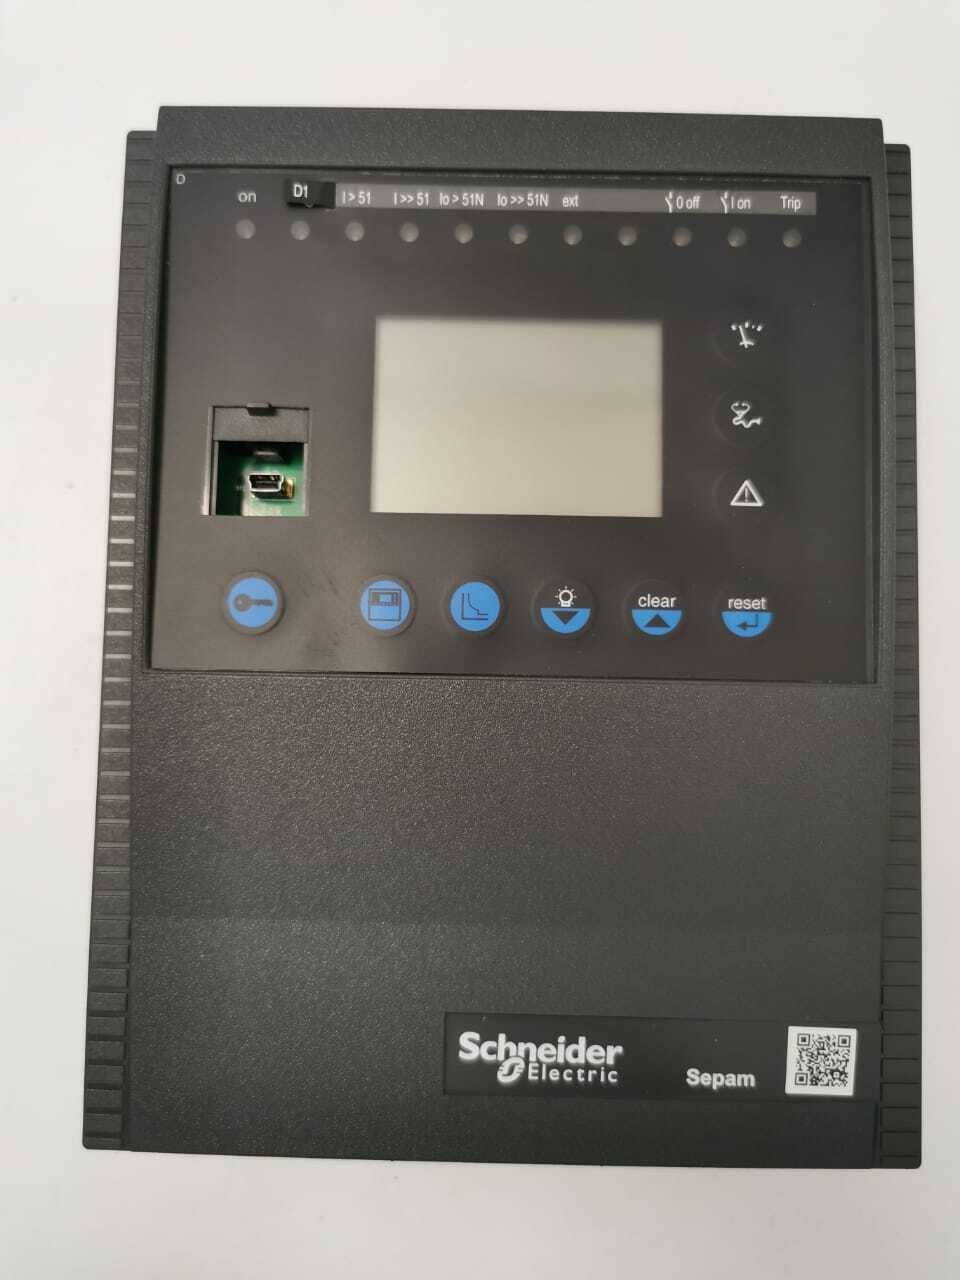 Xxxjxx Video - New Schneider Electric S10MD XXX JXX XNT Base Unit 59604 (Without Box) -  Orbit Surplus